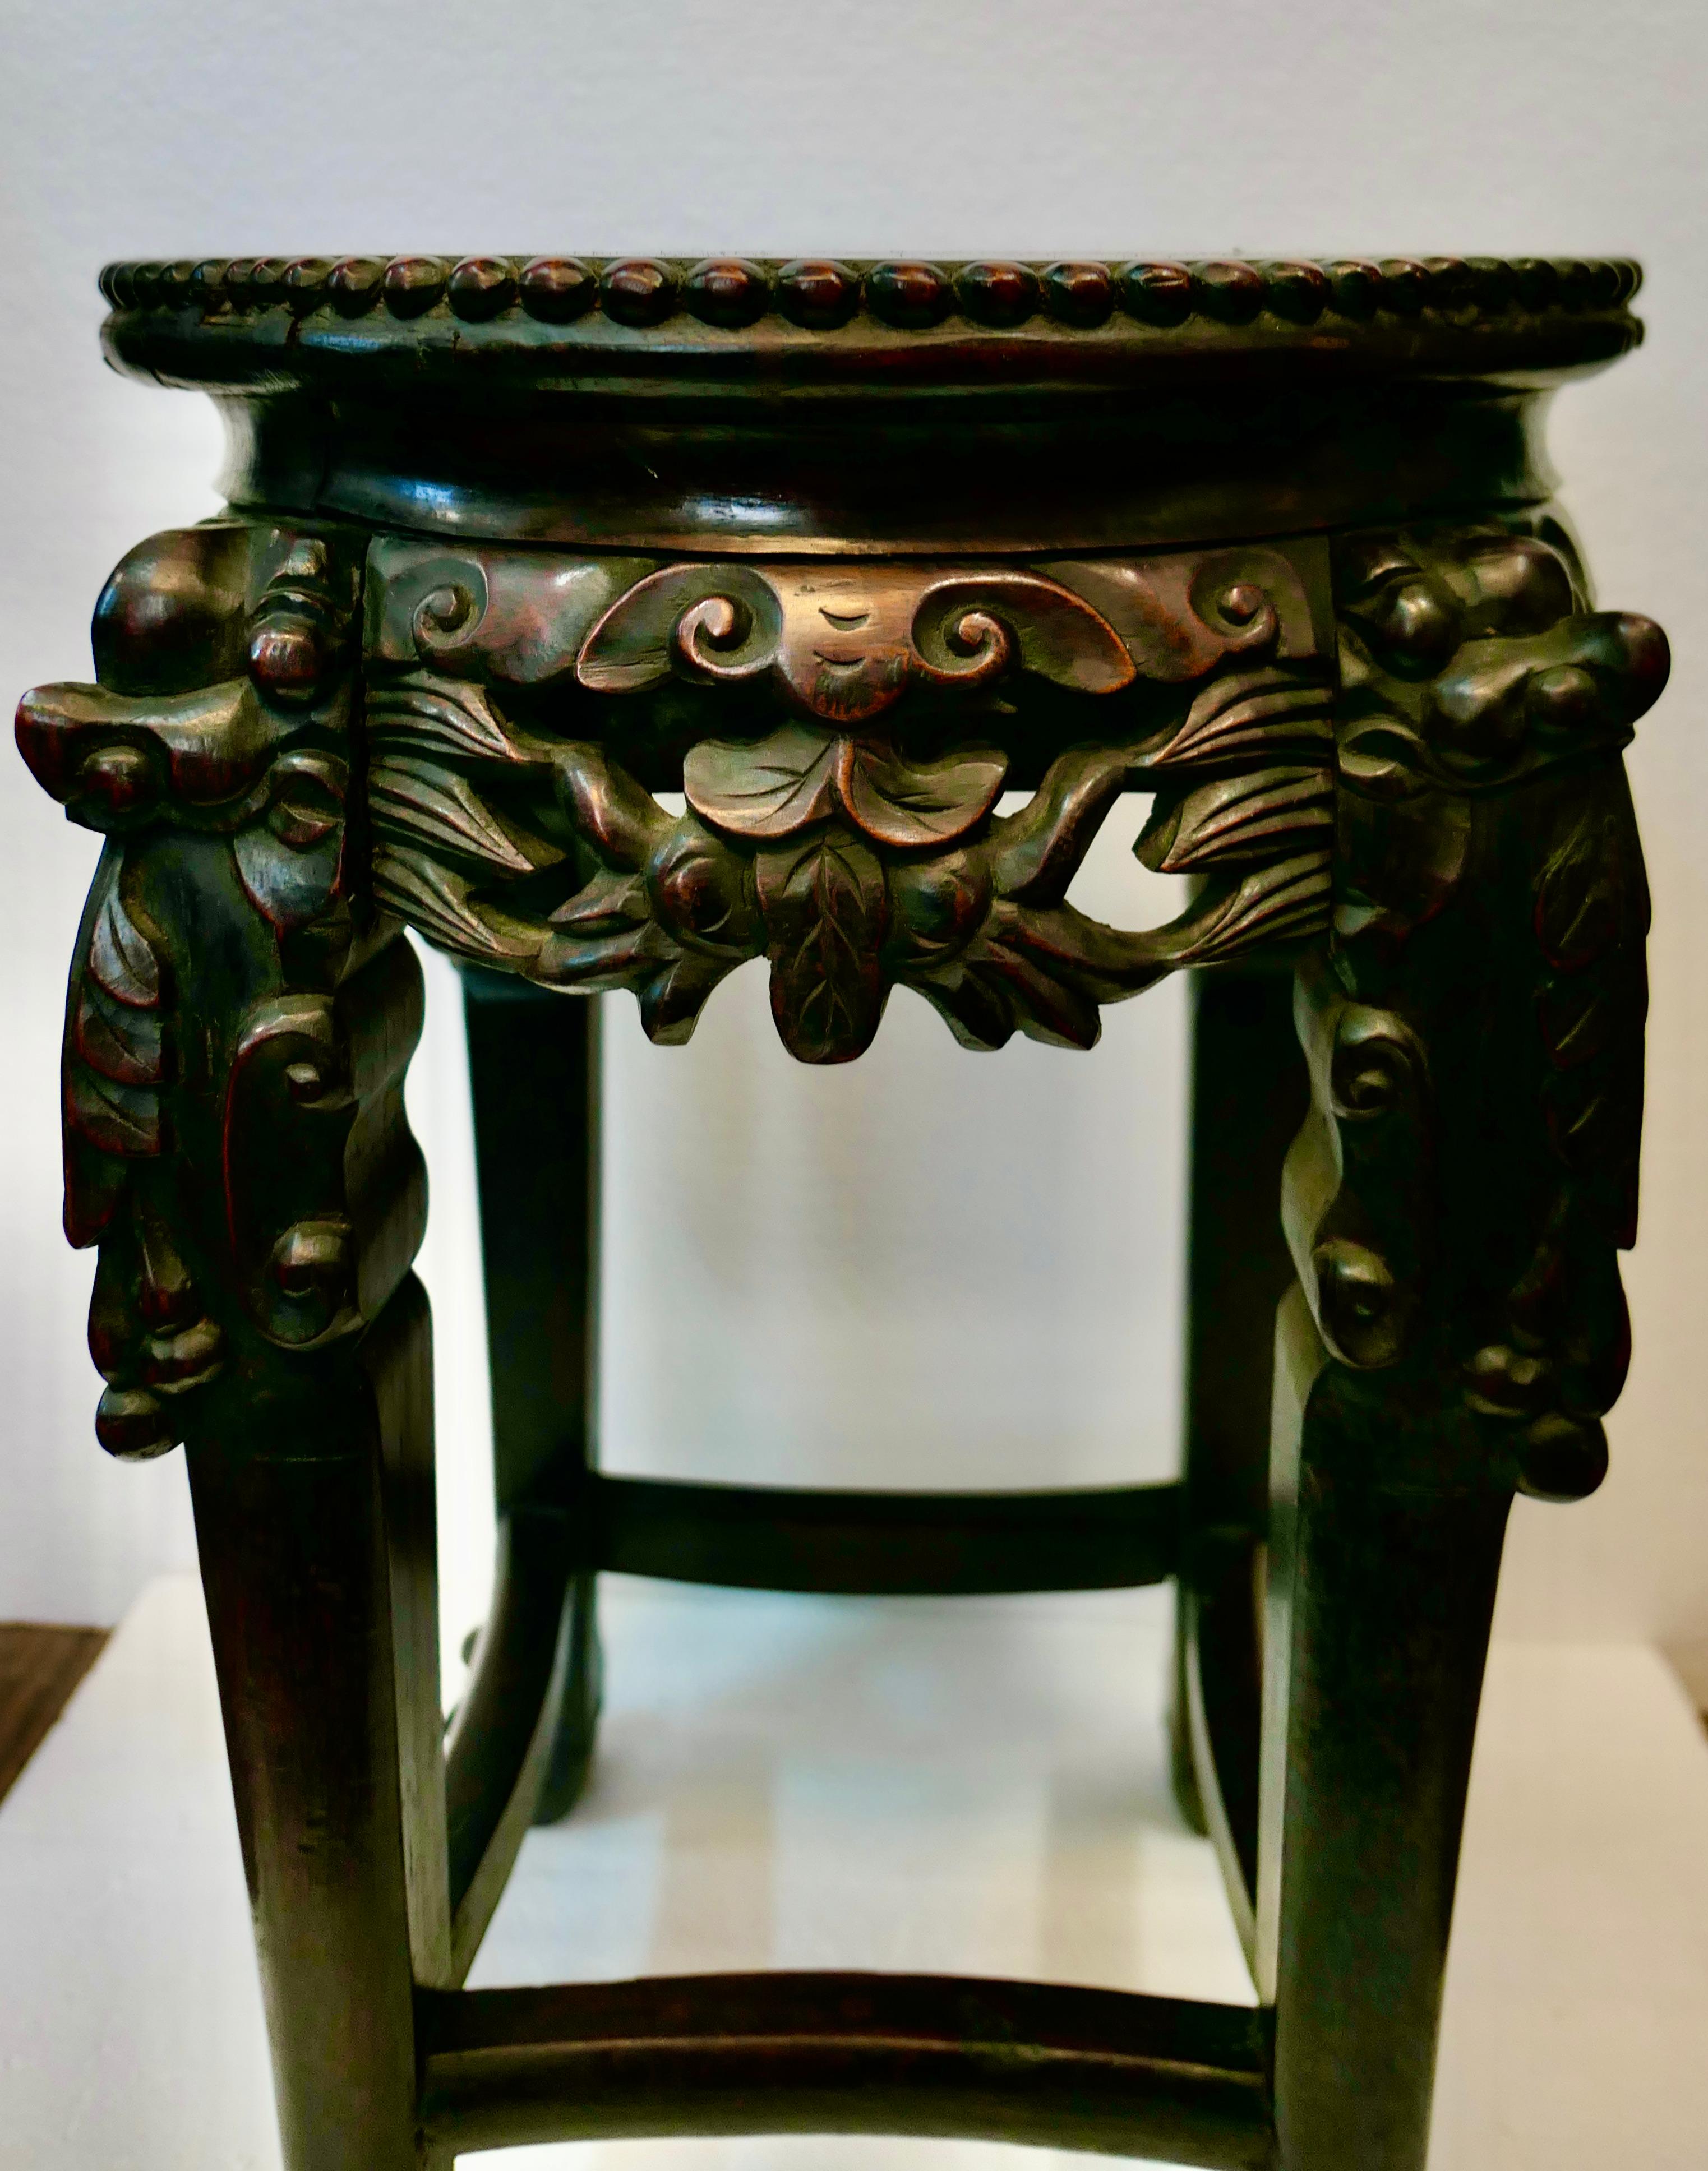 Cette table chinoise vintage en teck du début des années 1900 est magnifiquement sculptée à la main et superbement conçue avec quatre panneaux et pieds de tablier sculptés en alternance. Ces pieds présentent un motif décoratif audacieux accentué par